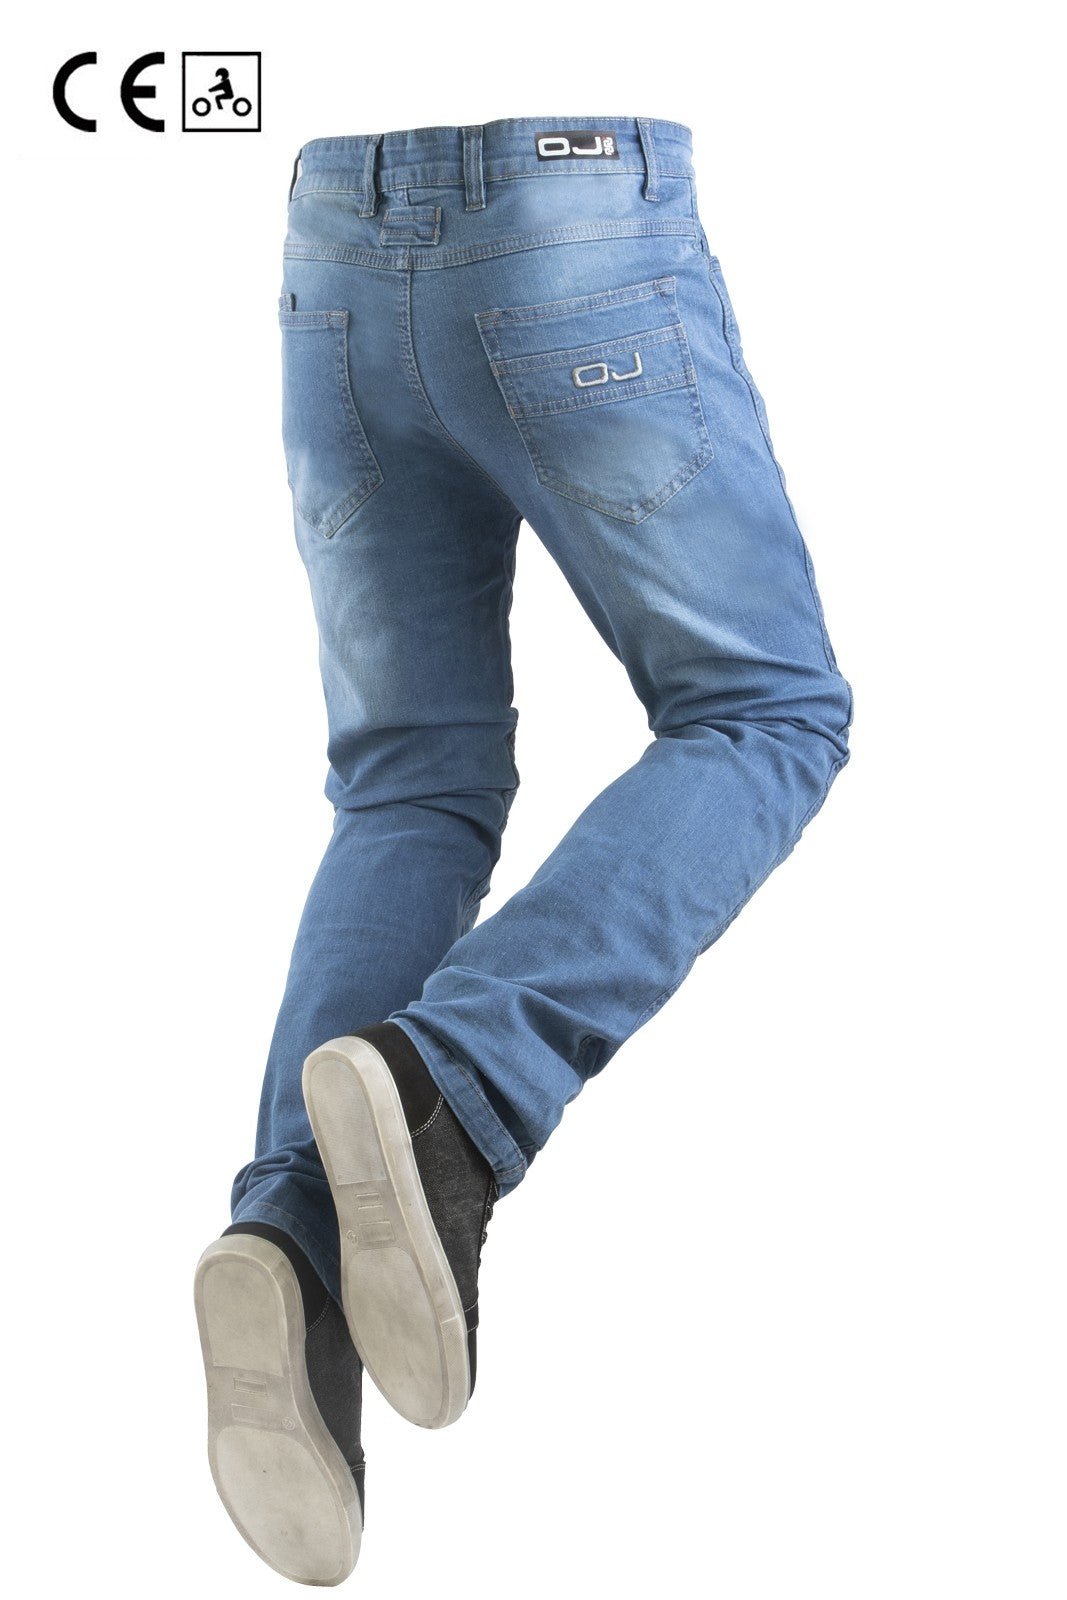 Jeans moto OJ RELOAD MAN 4stagioni elasticizzato con protezioni - OnTheRoad.shop - OJ